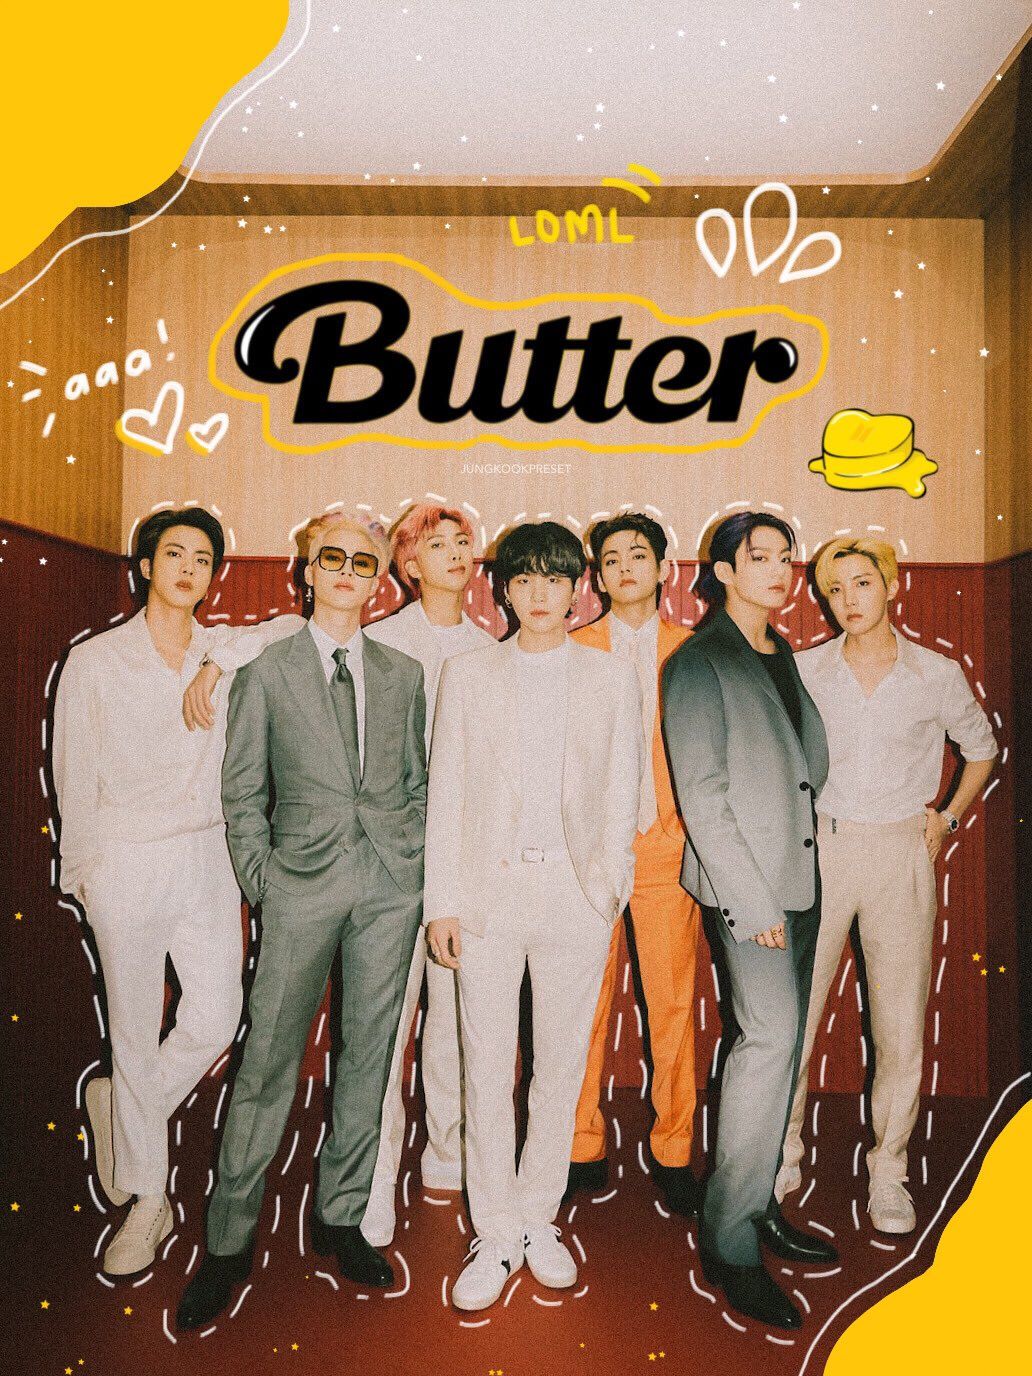 BTS 'Butter' Group Teaser Photo 1. Bts wallpaper, Bts lockscreen, Bts korea